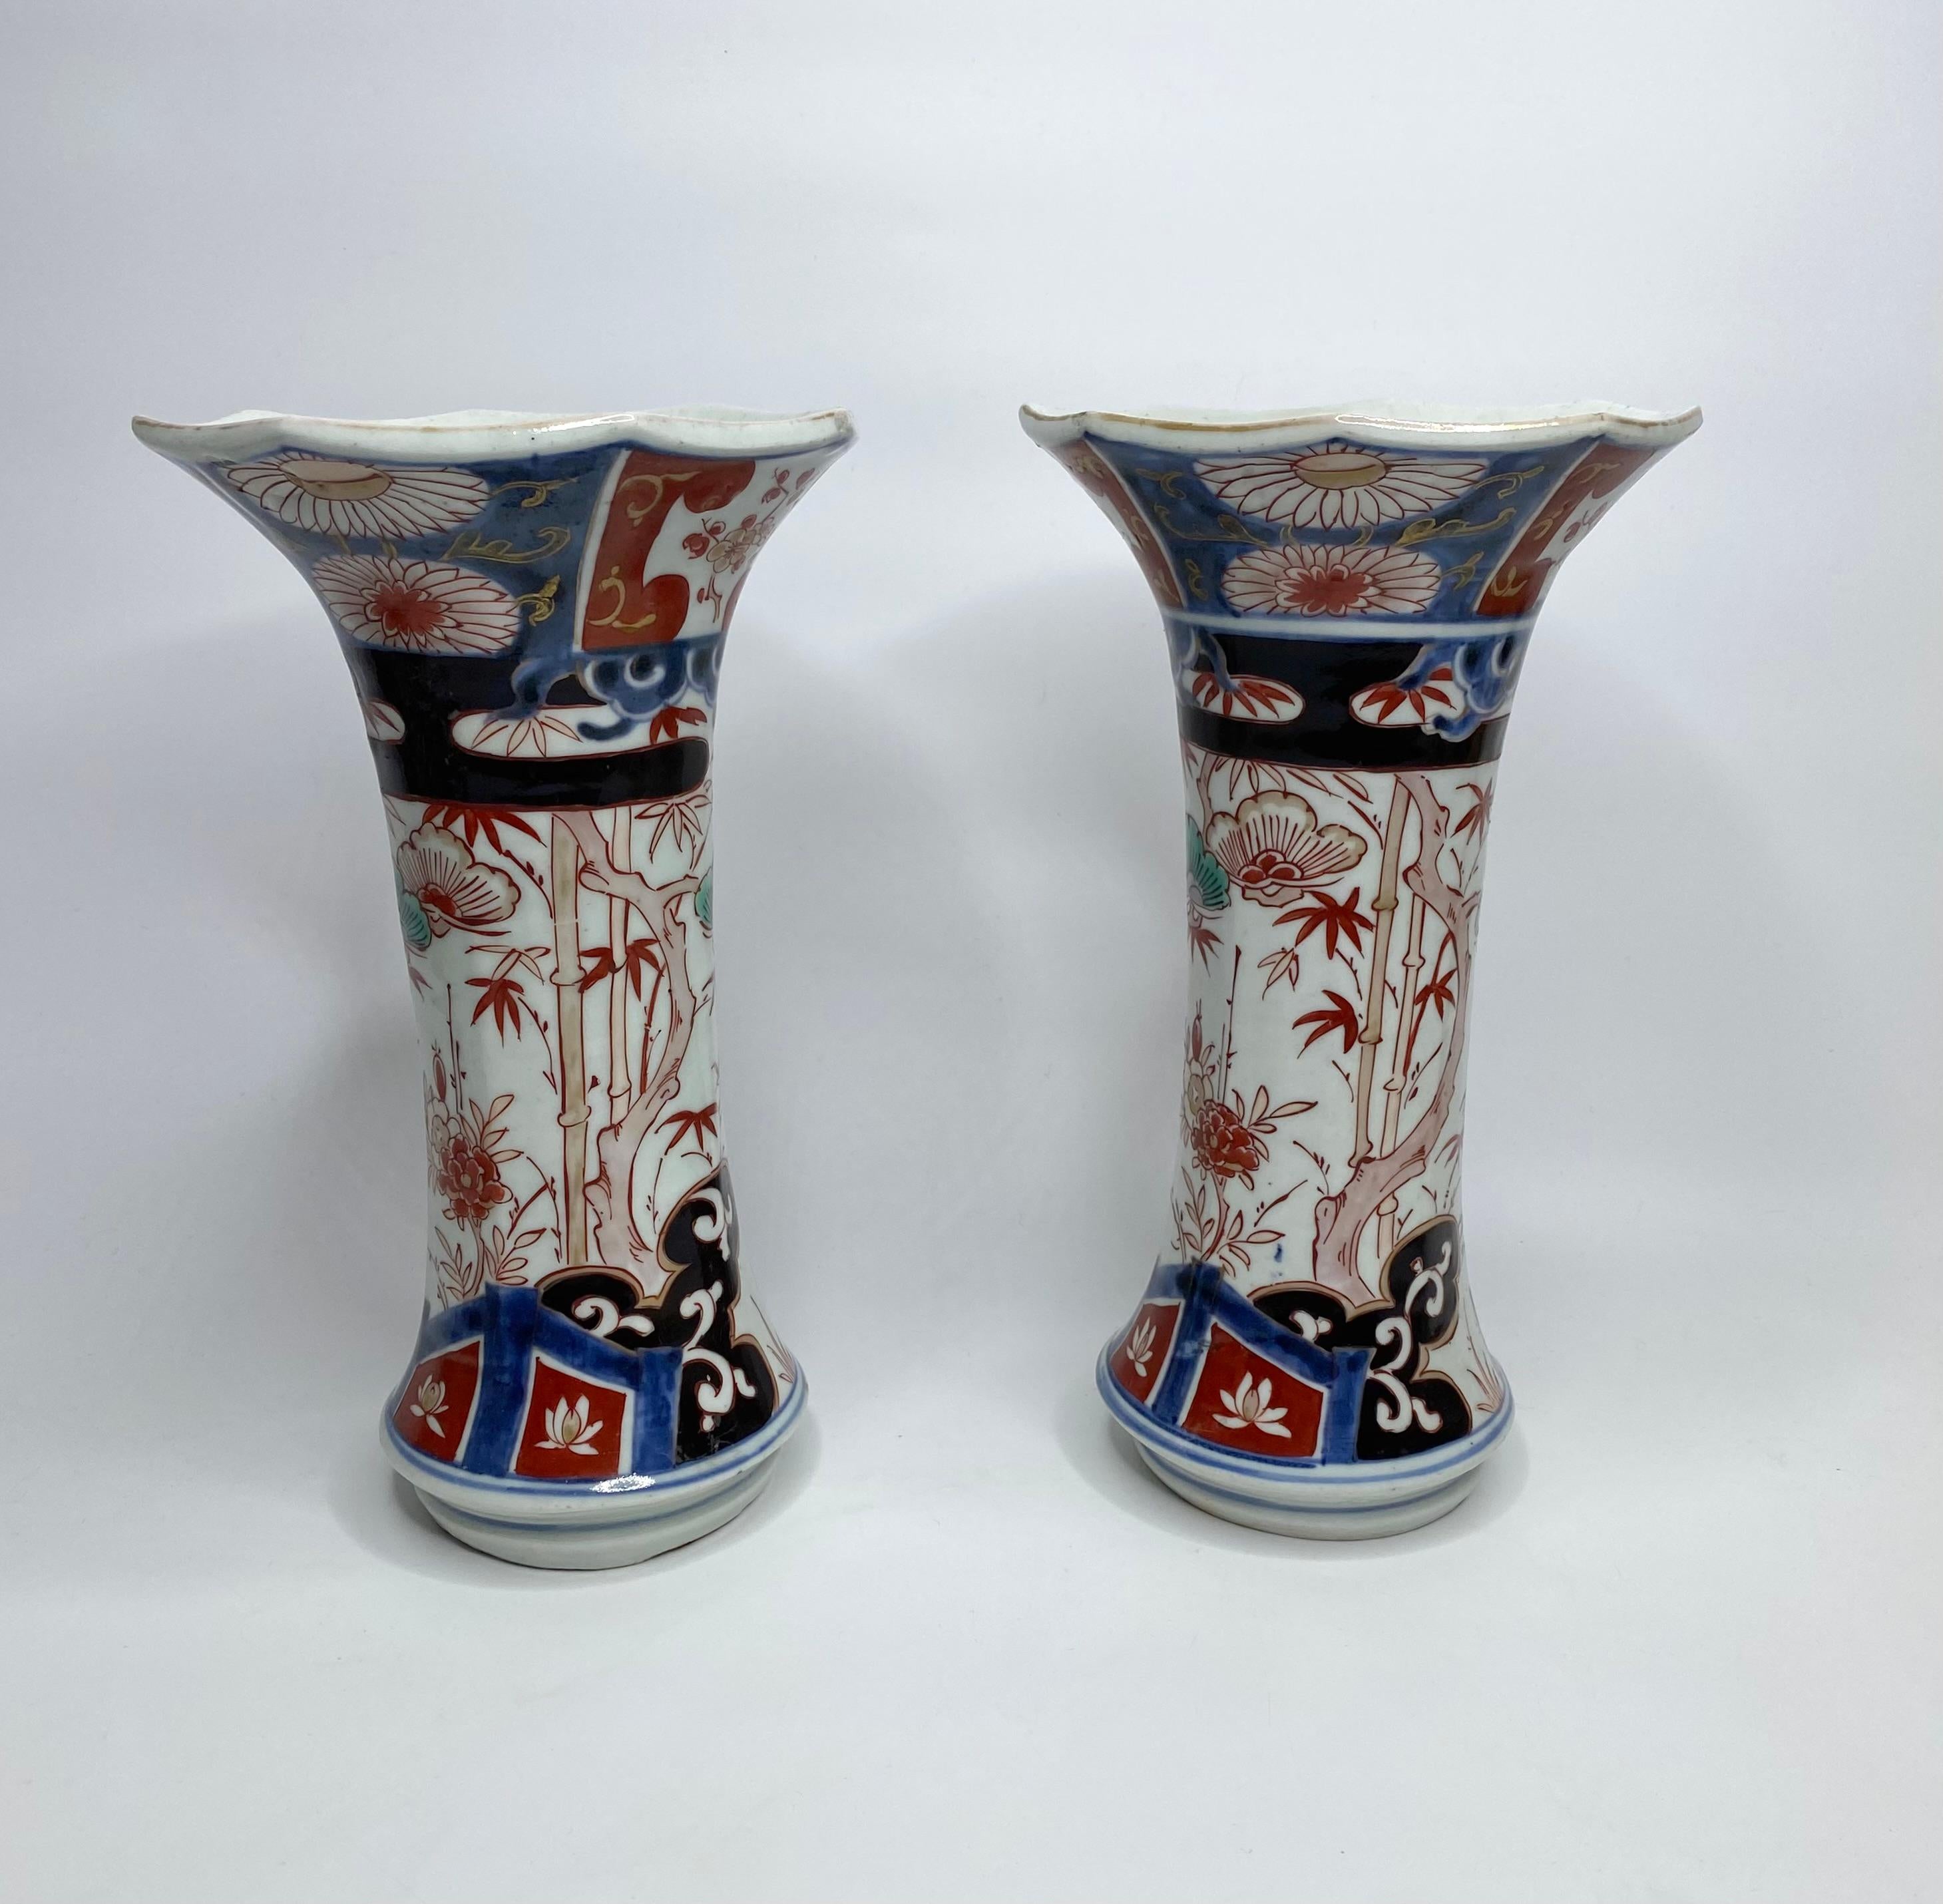 Edo Pair Imari porcelain vases, Arita, Japan, c. 1700. Genryoku Period.